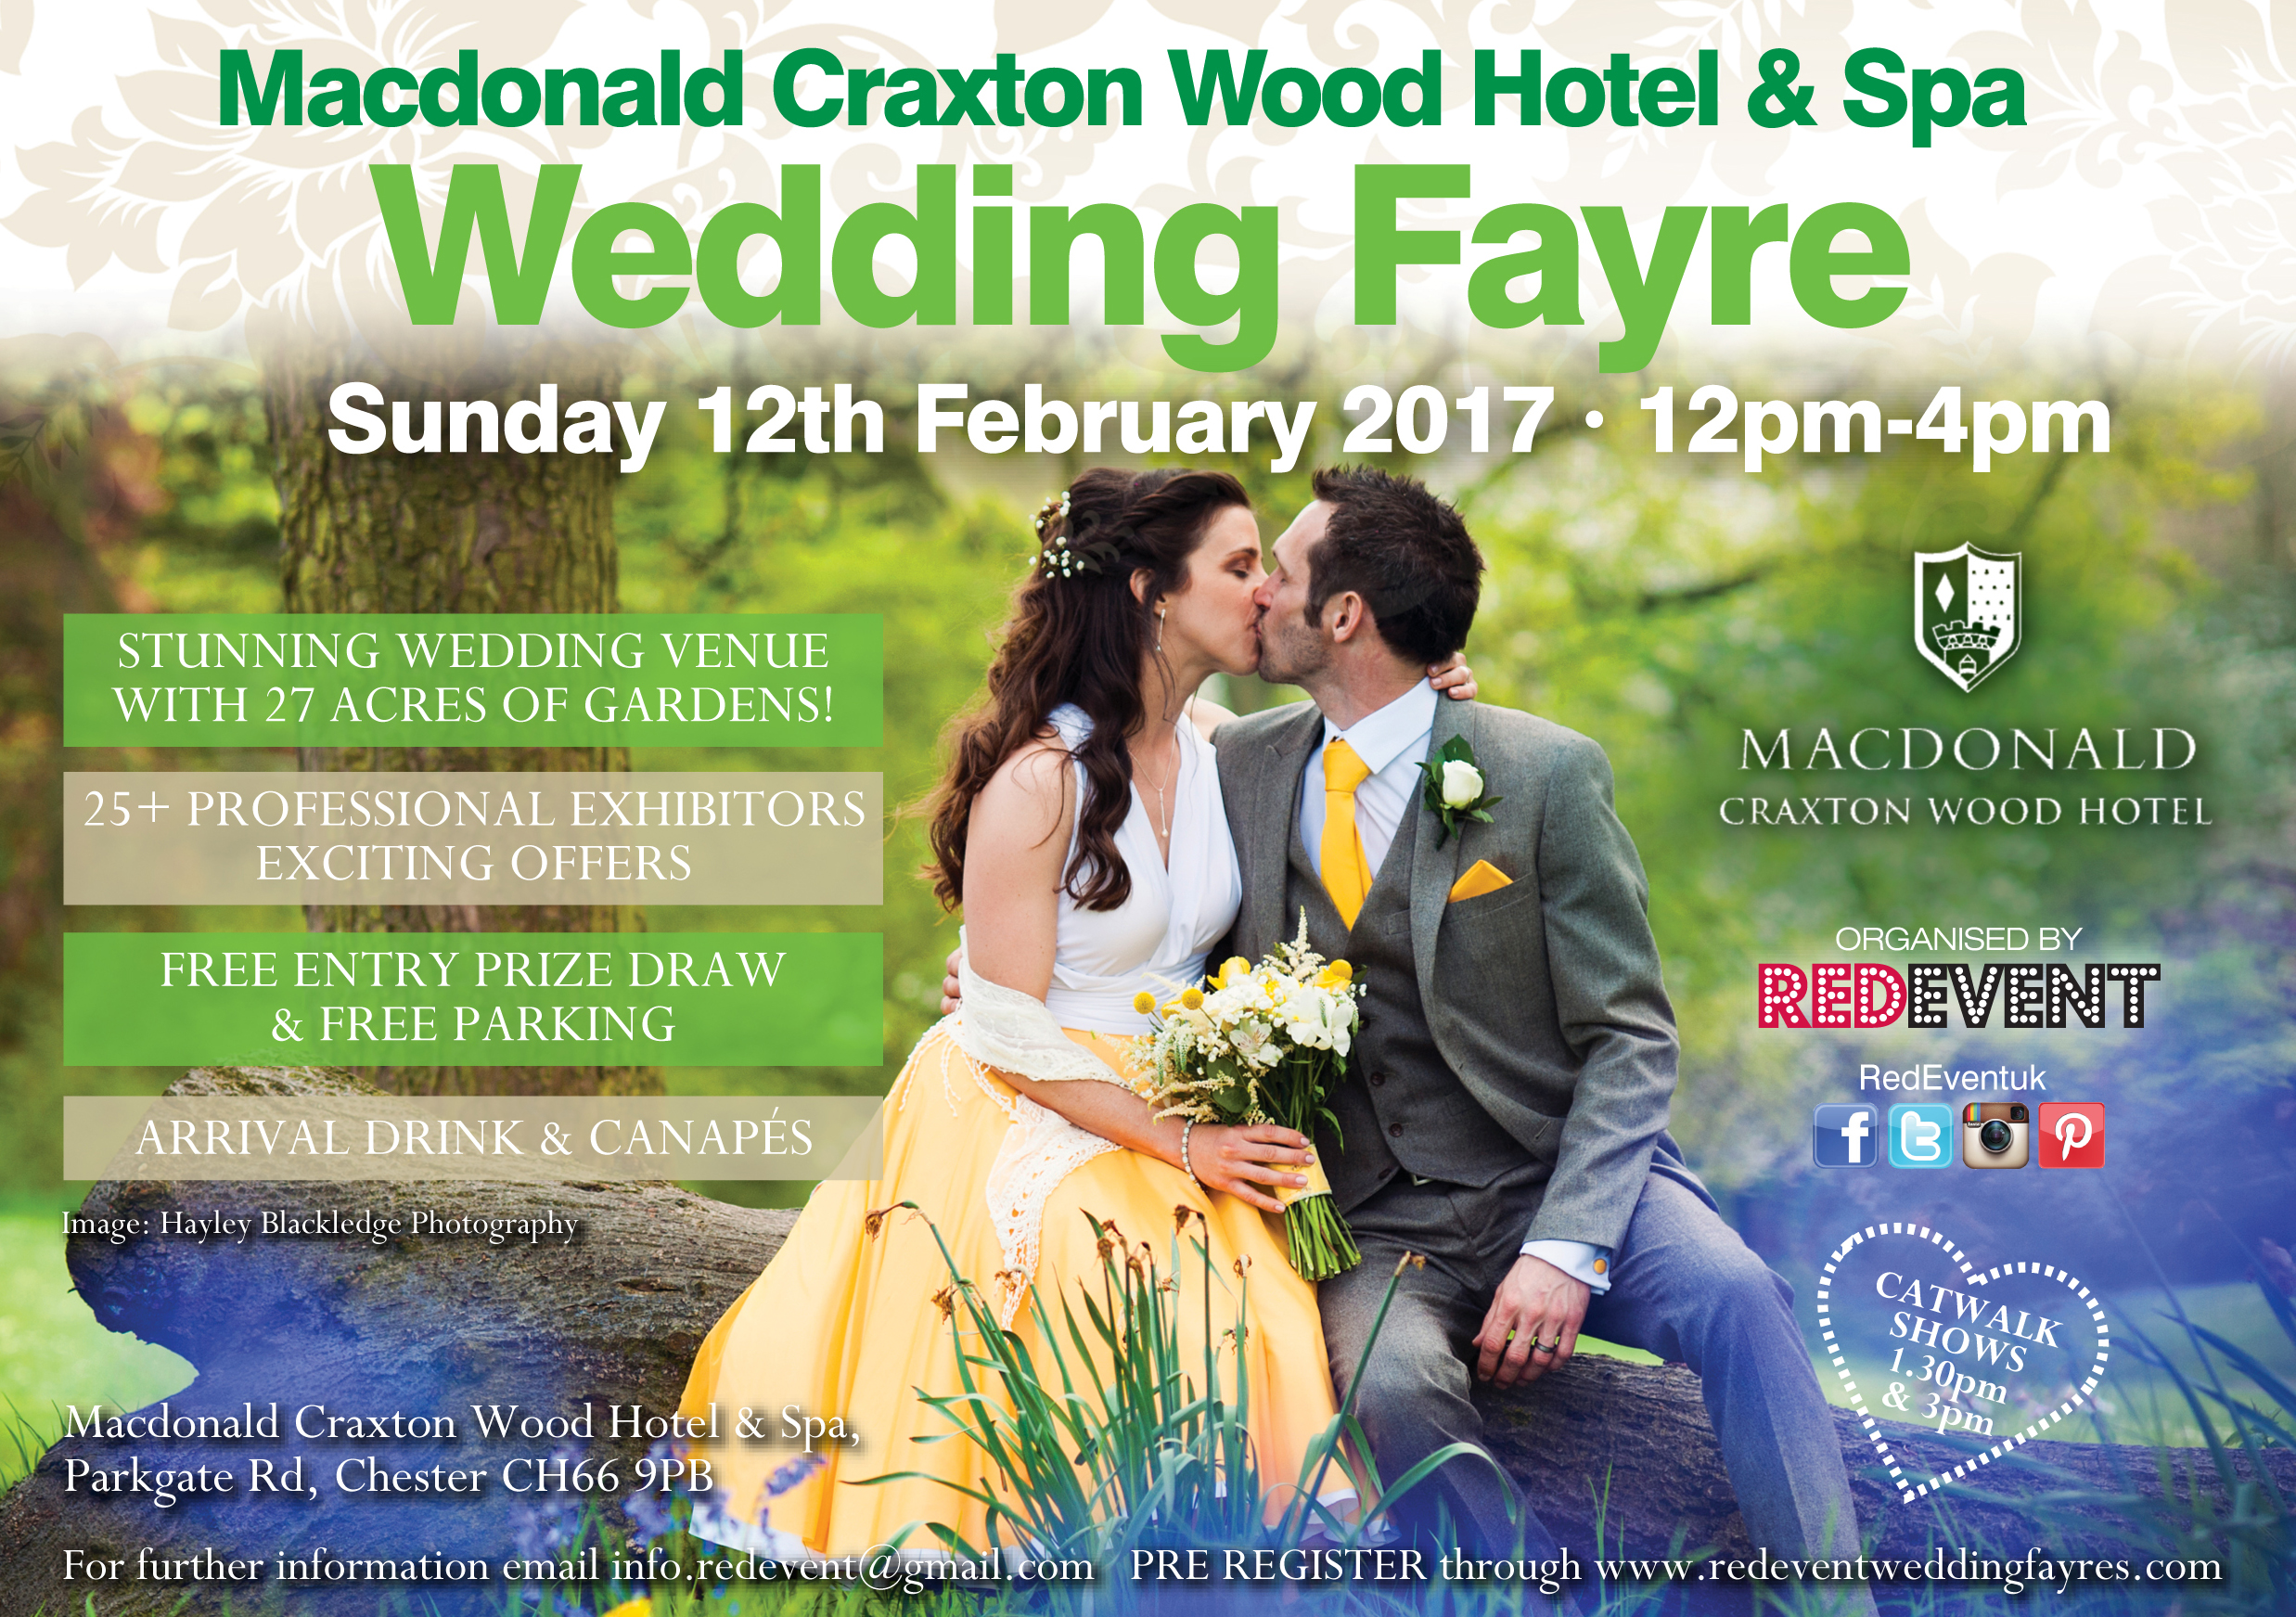 Macdonald Craxton Wood Hotel & Spa Spring 2017 Wedding Fayre flyer.jpeg